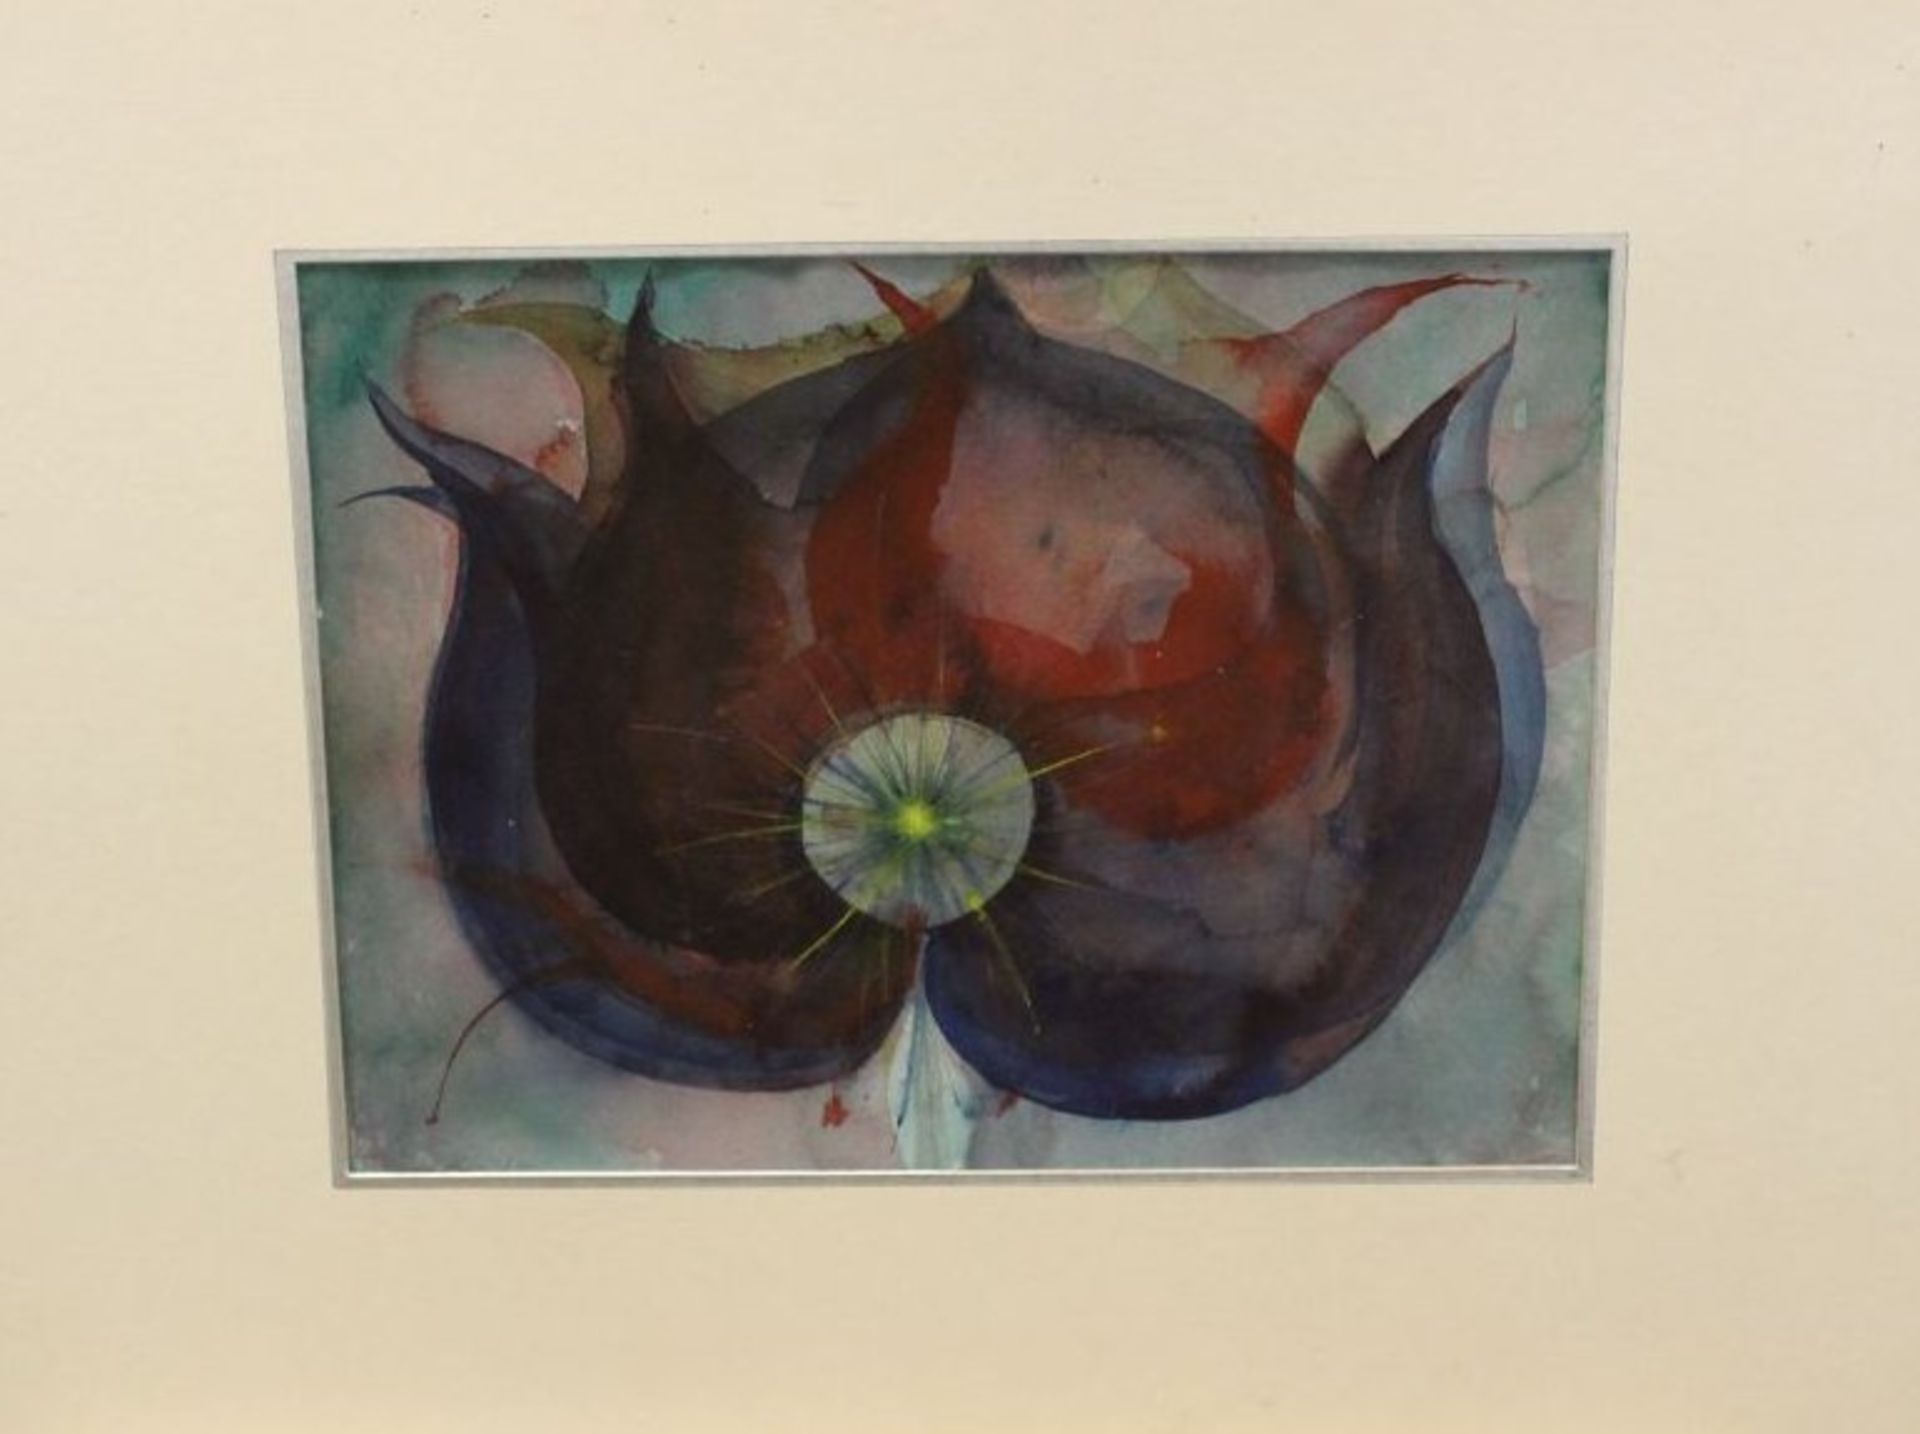 l.u. unleserl.signiert '81, abstrakte Komposition, Aquarell, ungerahmt in Passepartout, 50 x - Bild 3 aus 3